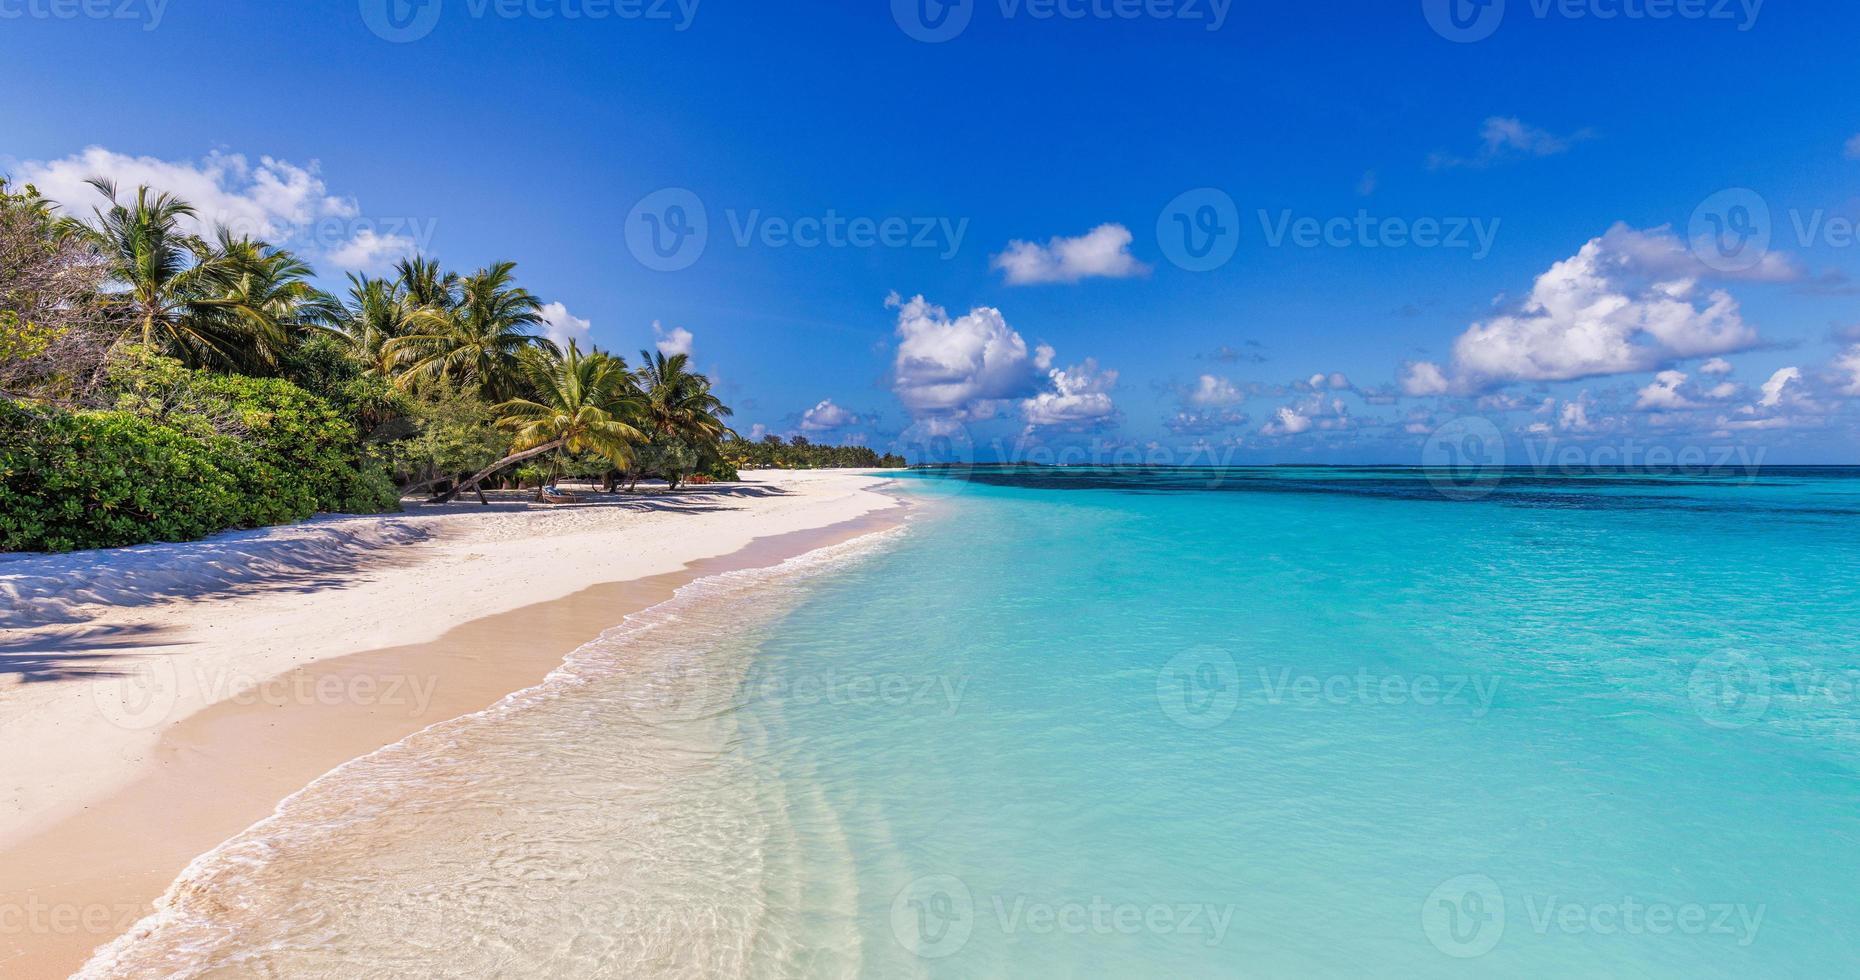 skön tropisk strand avkopplande himmel på exotisk ö med handflatan träd lugna vågor och Fantastisk blå hav lagun. paradis natur destination, idyllisk utomhus- scen för sommar resa semester, inspirera foto